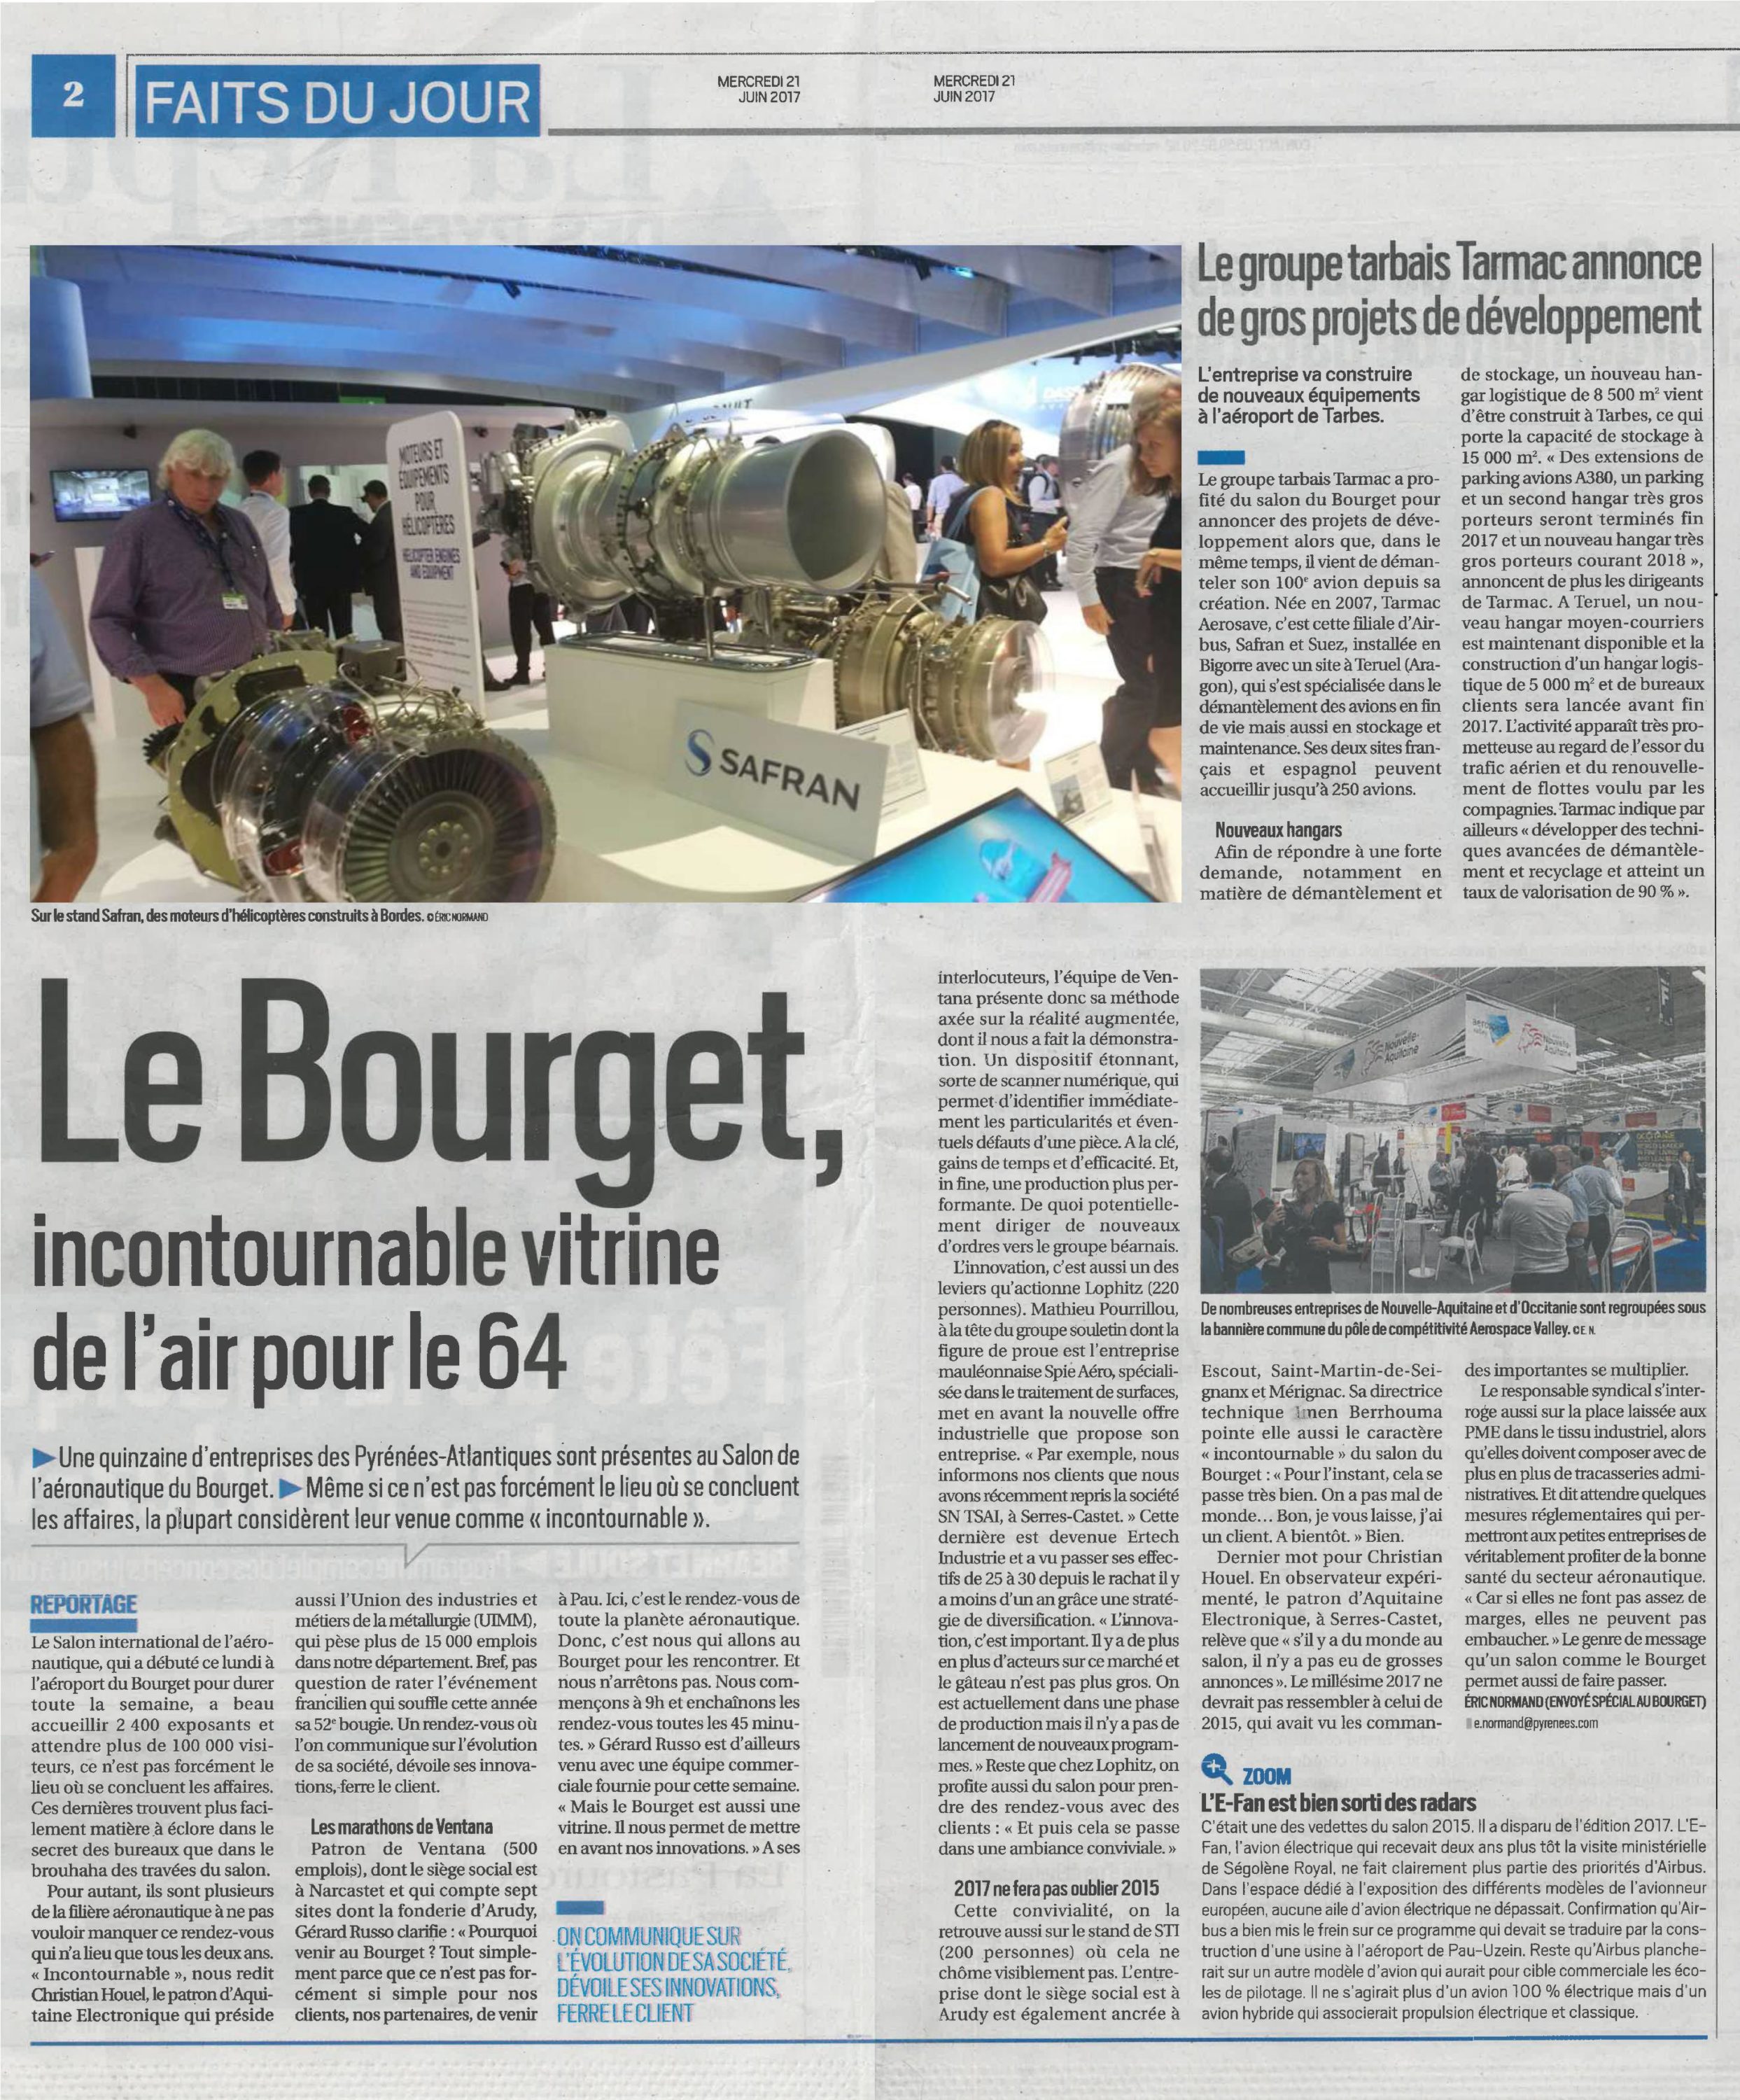 Article_Le_Bourget_incontournable_vitrine_de_lair